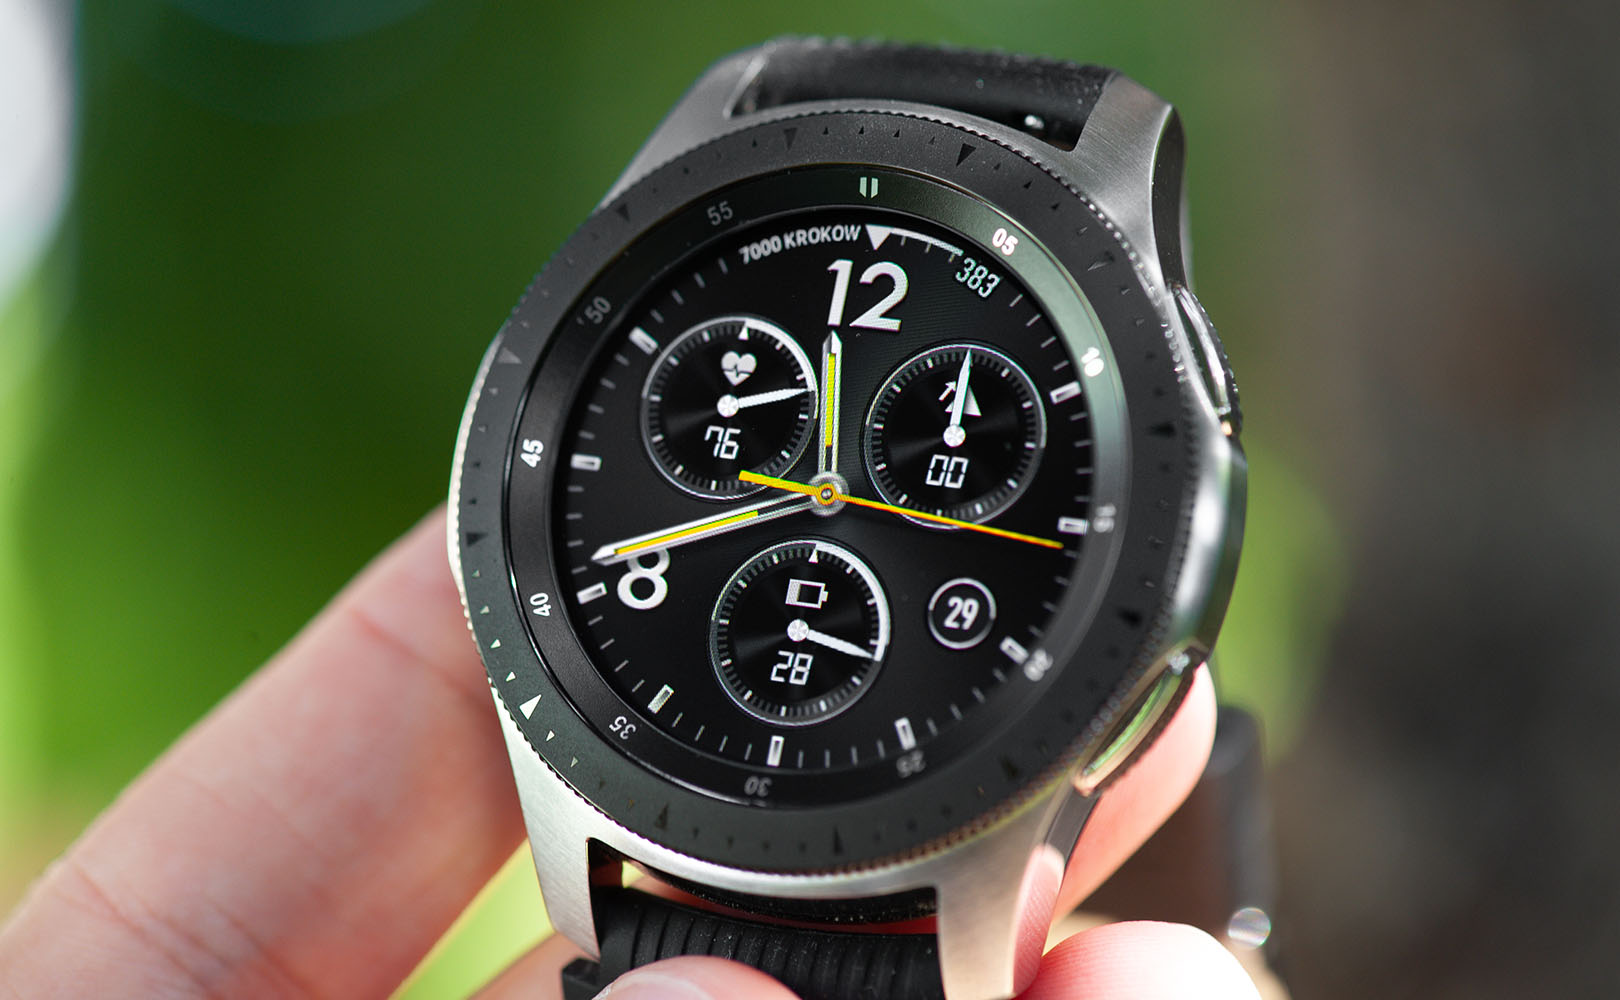 Samsung watch r800. Samsung Galaxy watch r800. Samsung Galaxy watch 46mm Silver r800. Samsung Galaxy watch 46mm серебристый. Часы Samsung Galaxy watch r800.